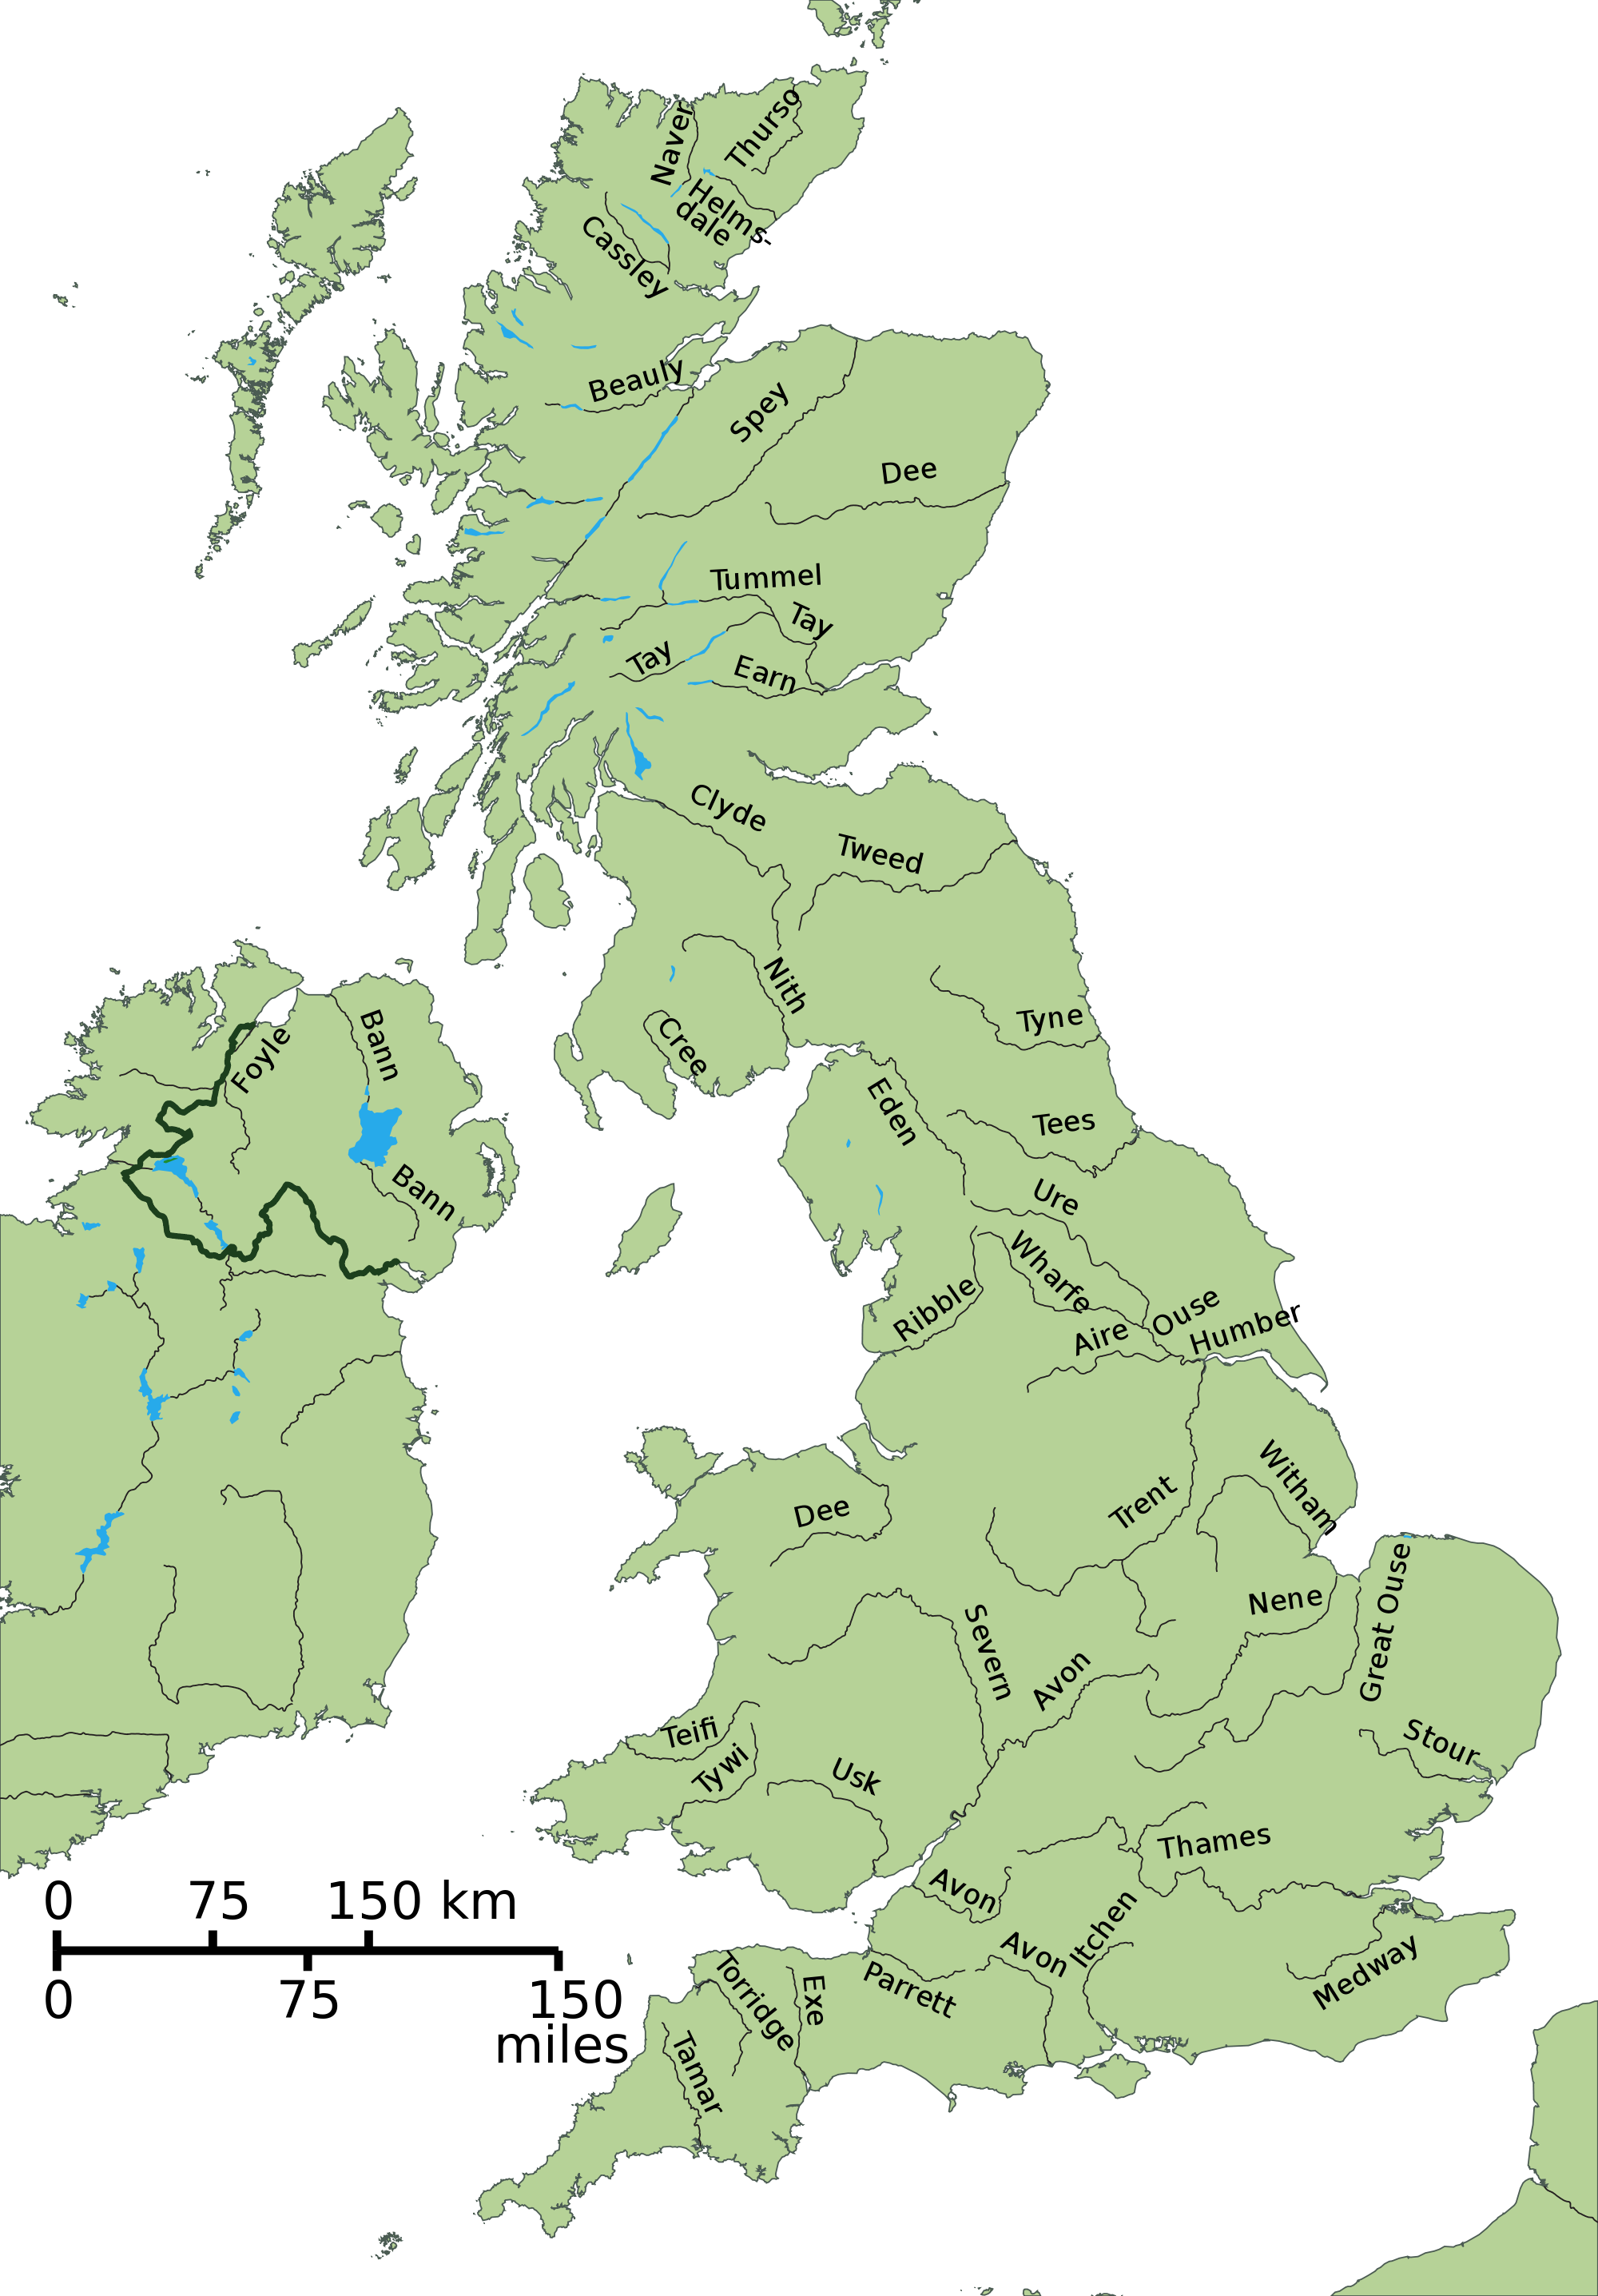 英国三大河流分布图,英国的河流分布示意图 - 伤感说说吧